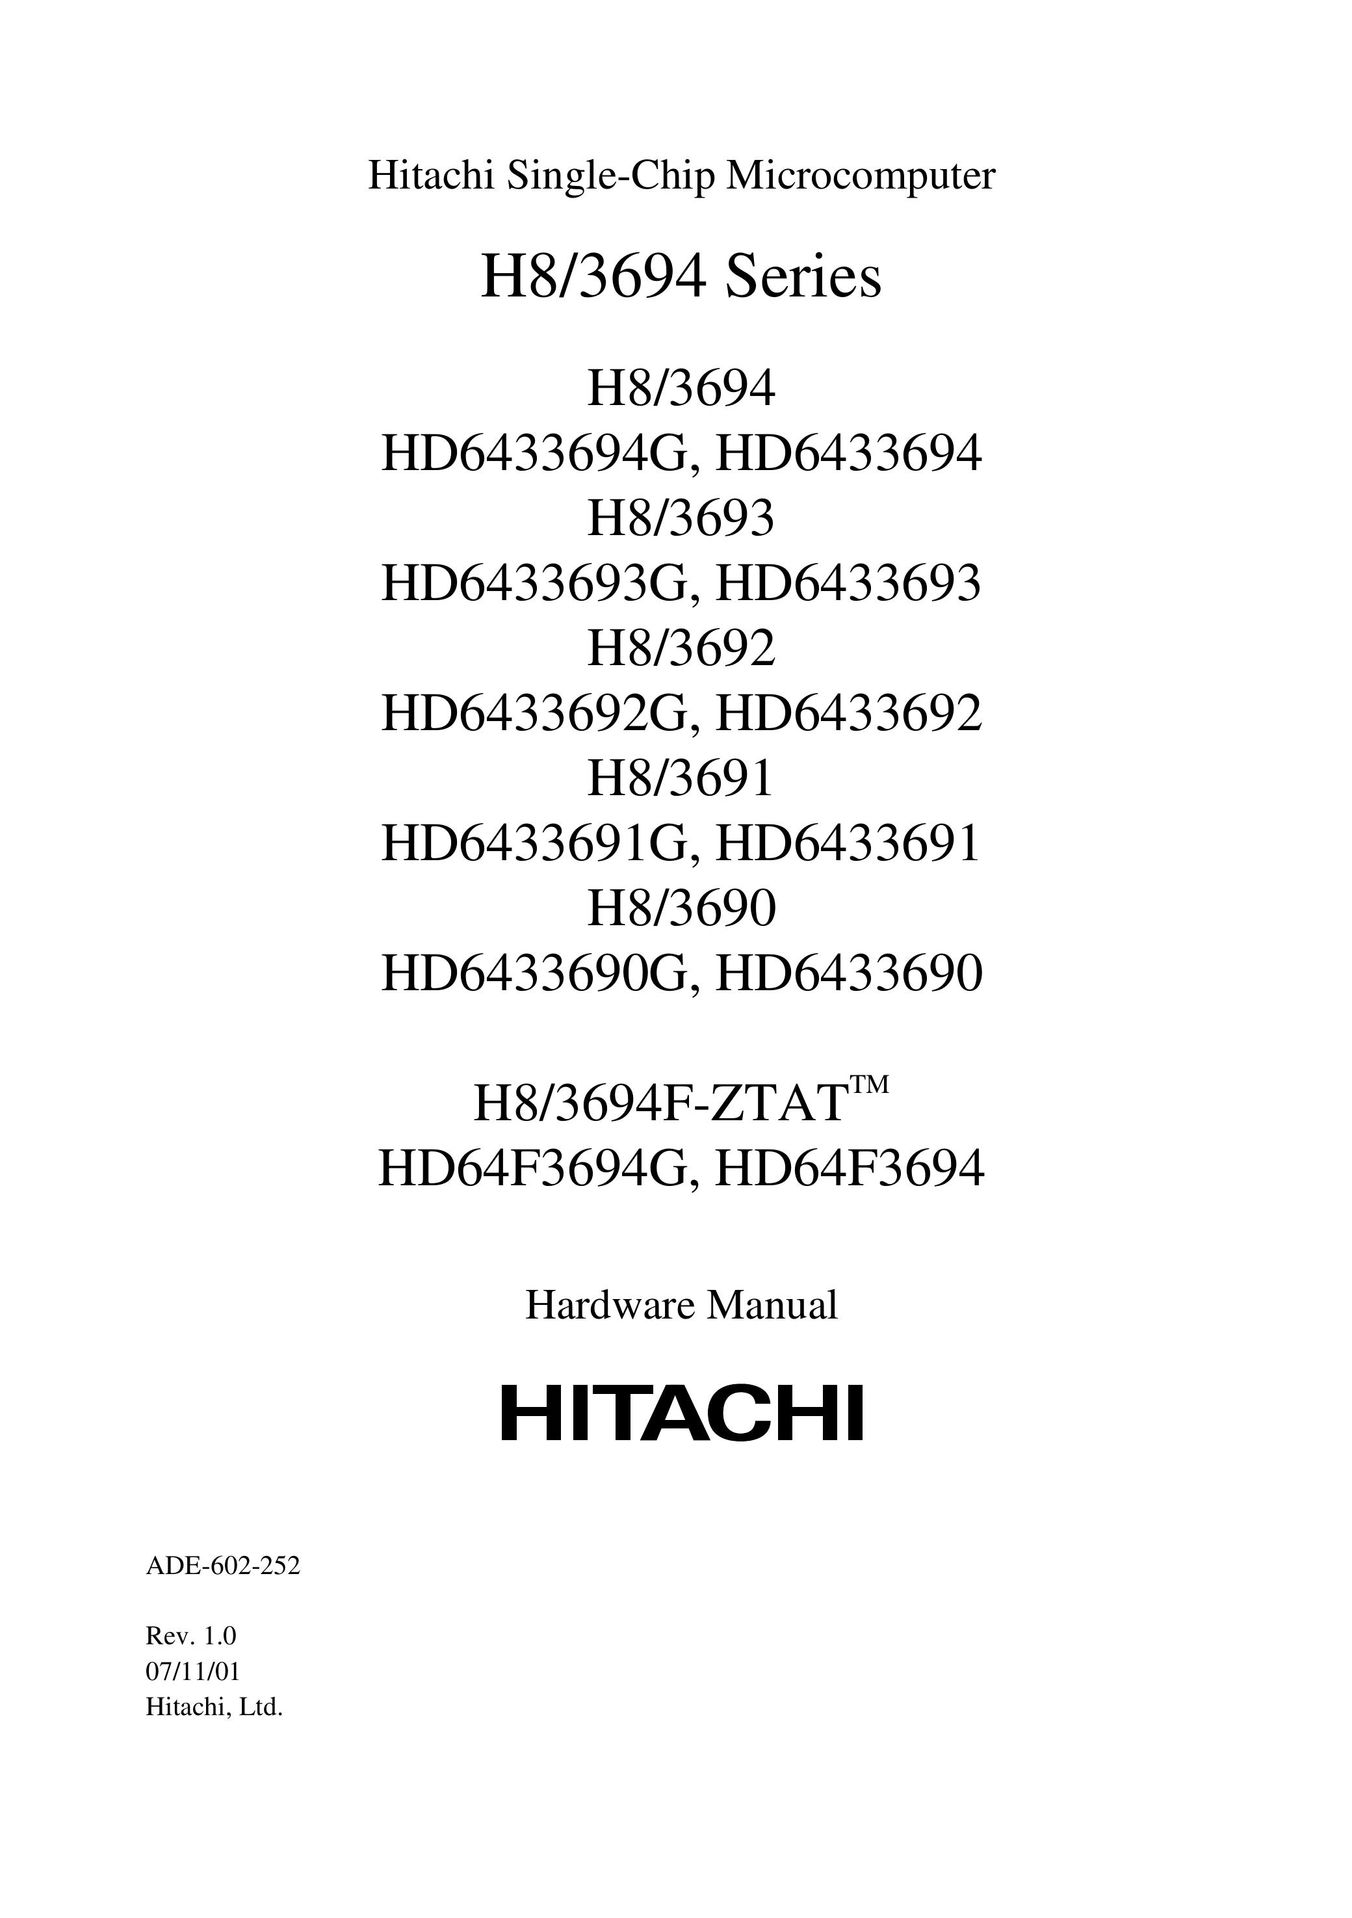 Hitachi H8/3693 TV Mount User Manual